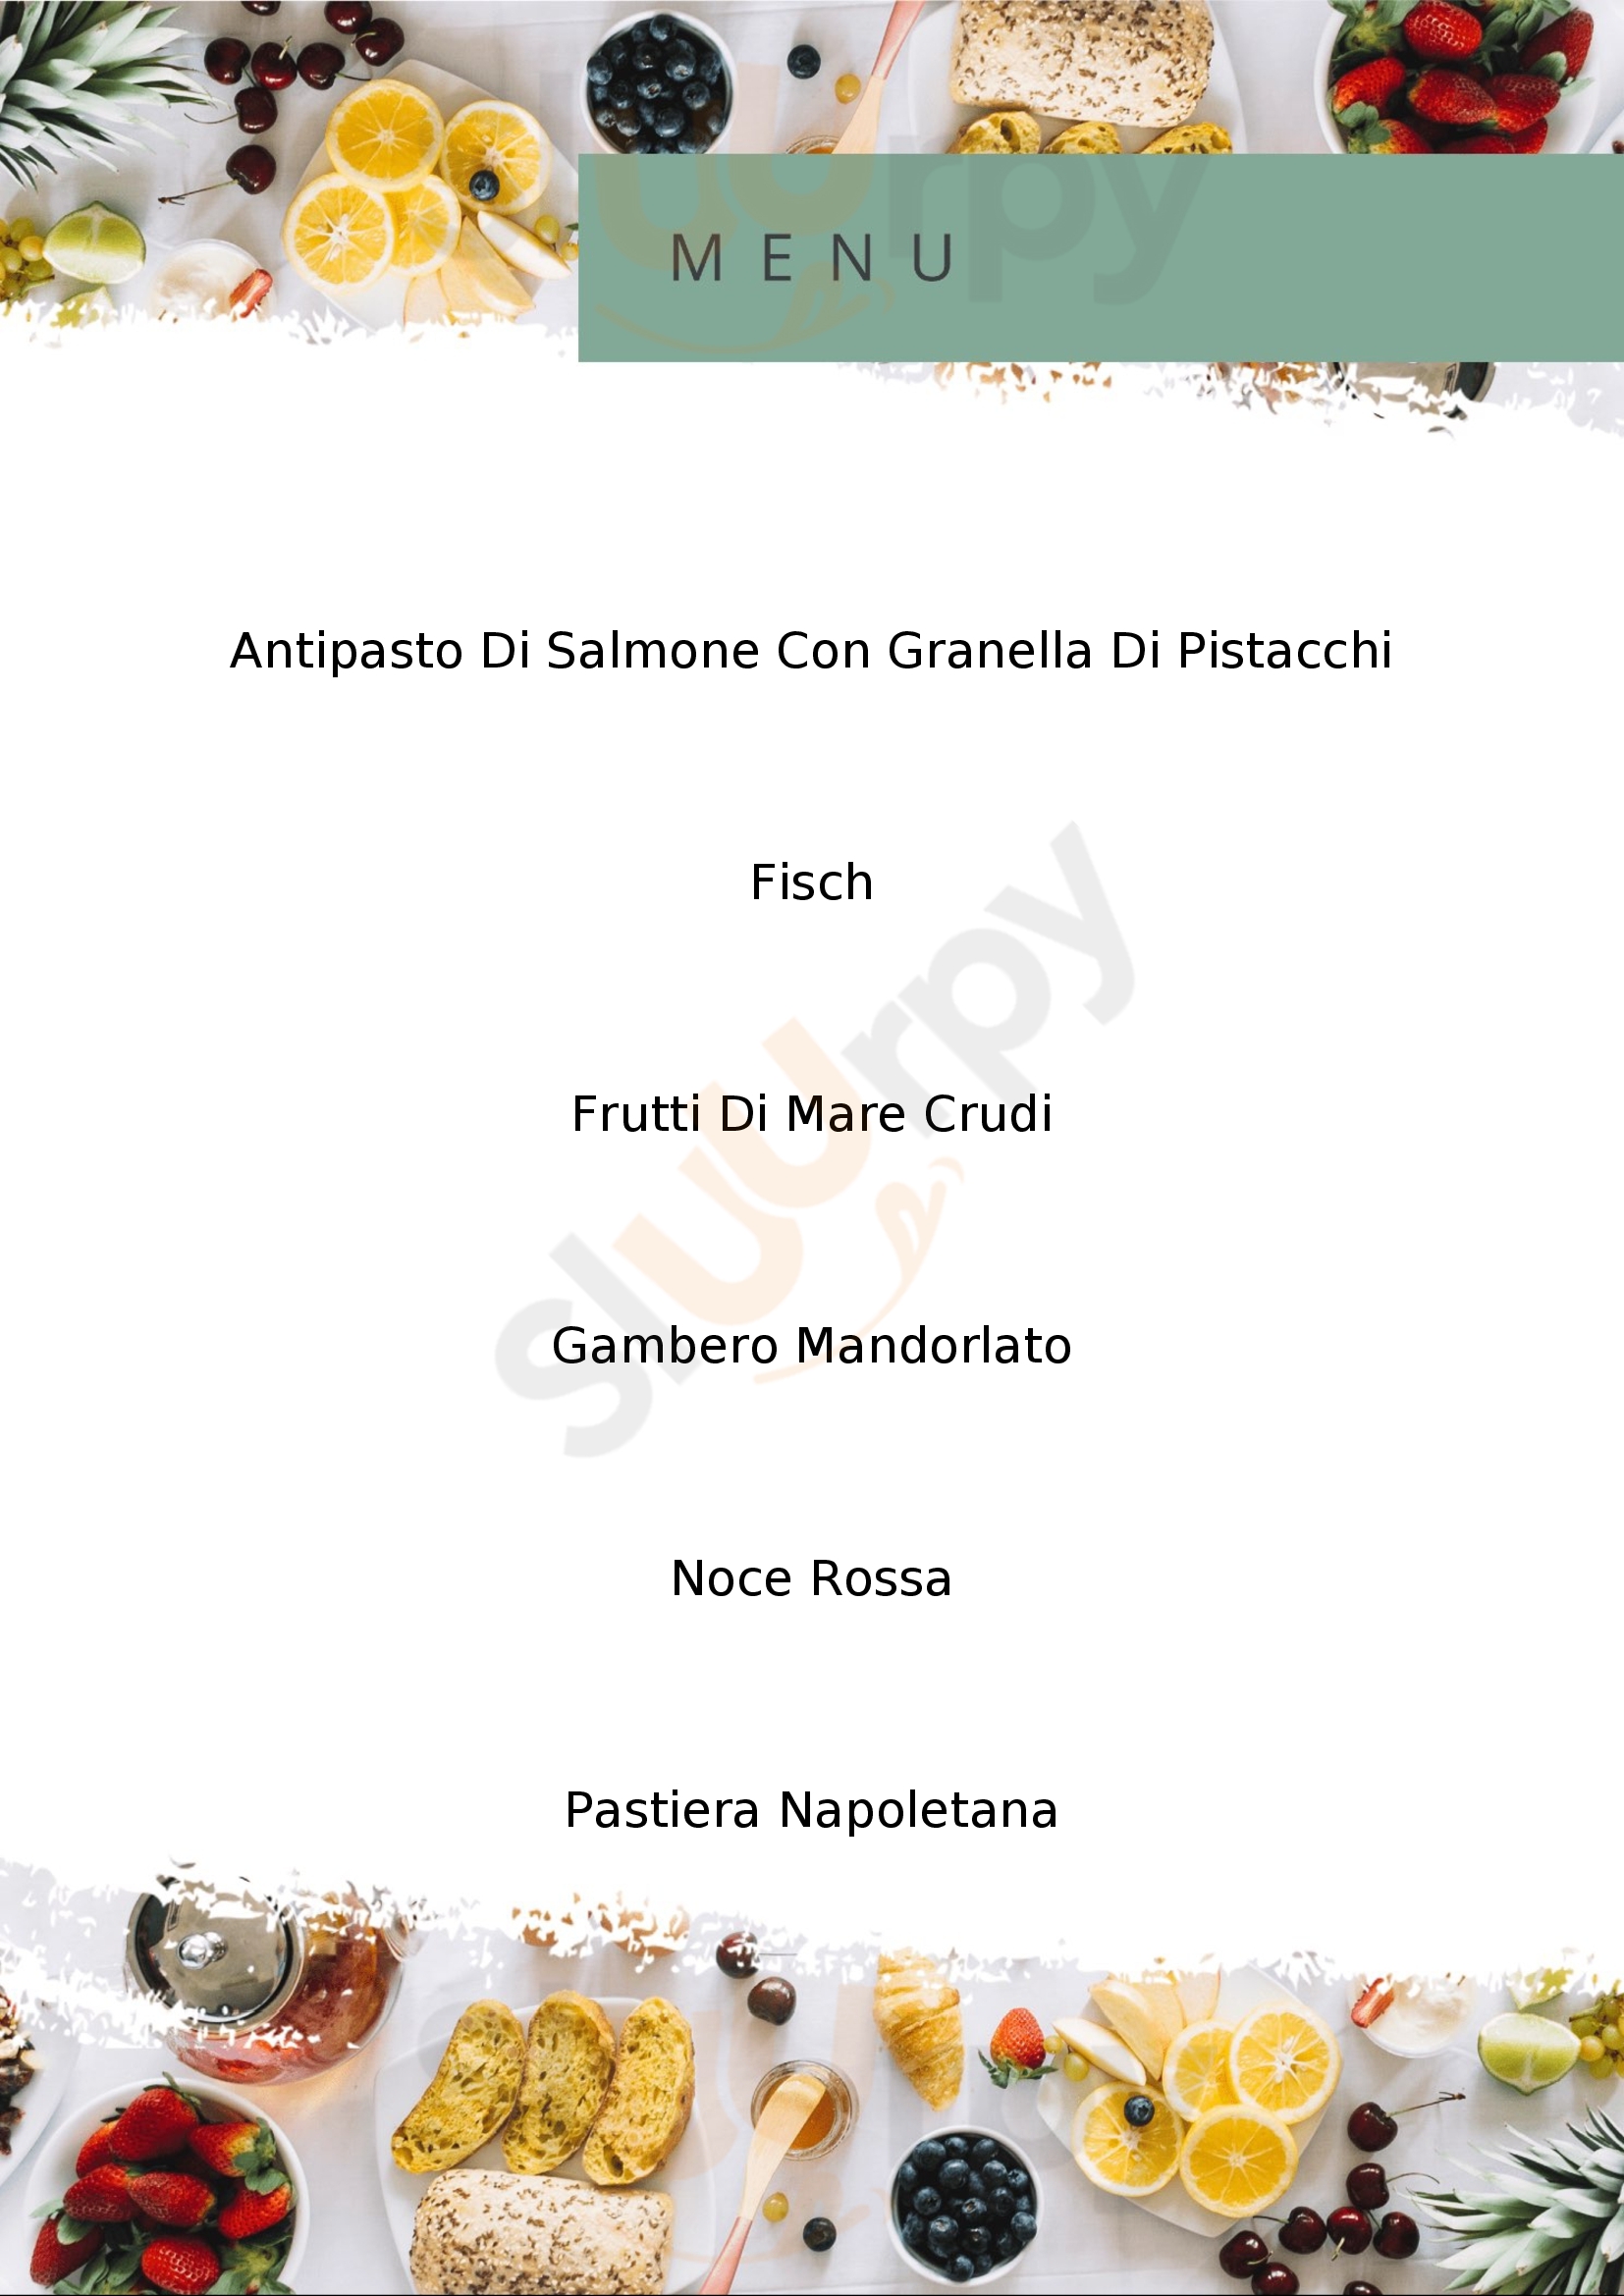 Osteria pizzeria Veronique Trani menù 1 pagina